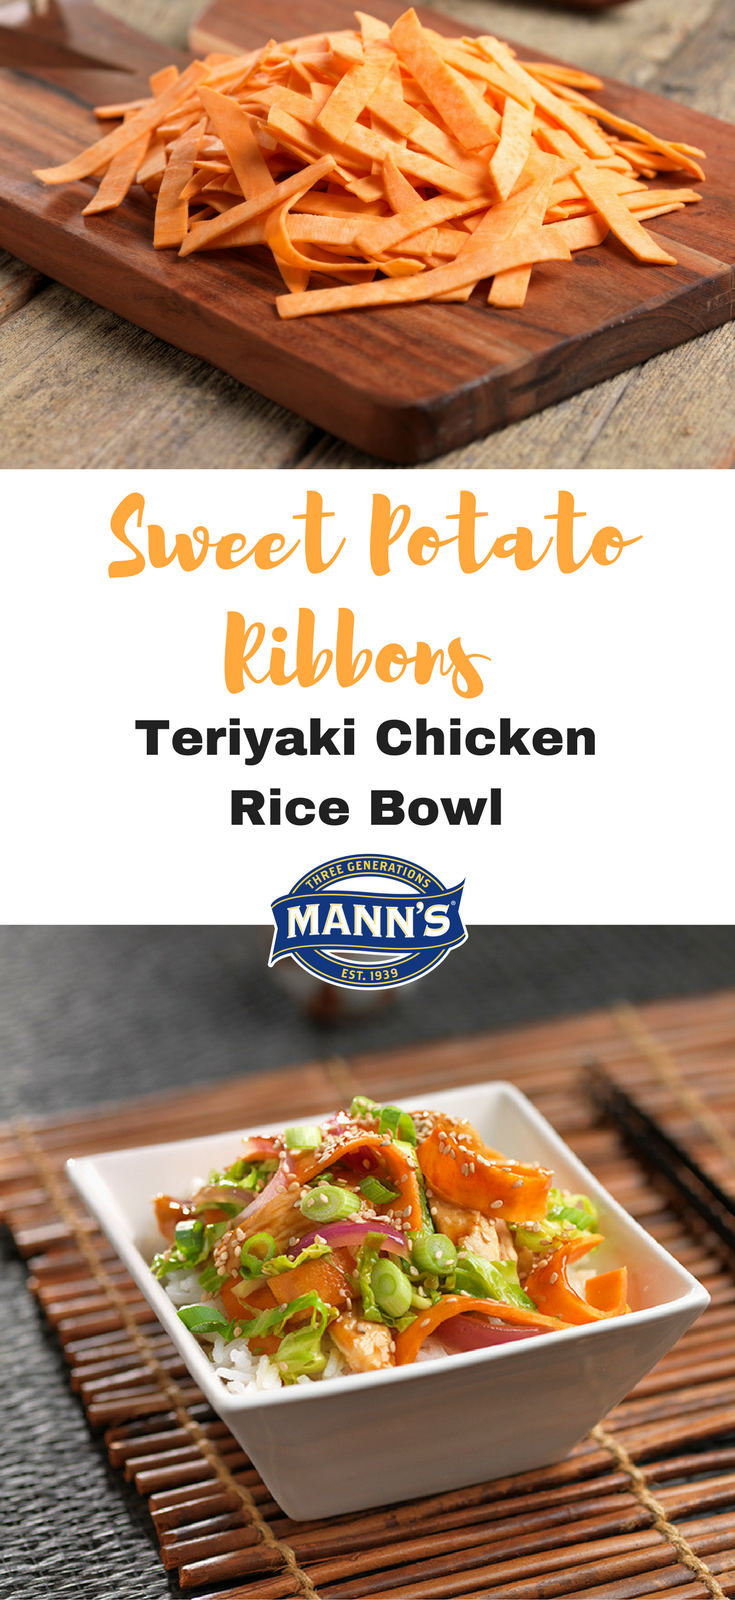 Sweet Potato Ribbons Teriyaki Chicken Rice Bowl | Mann's Fresh Vegetables